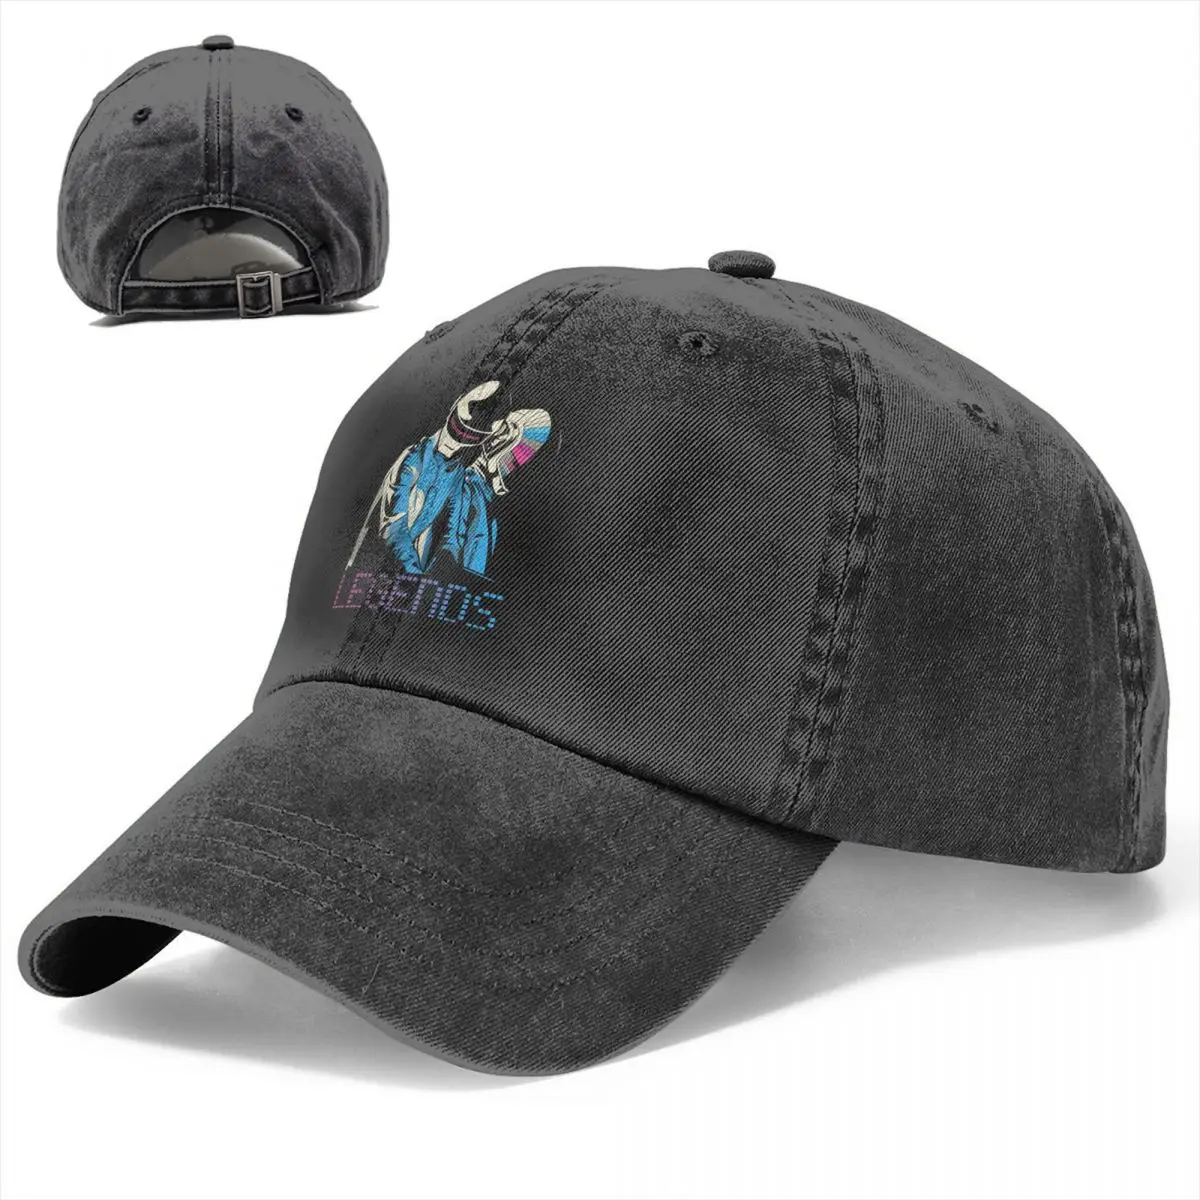 Летняя кепка С солнцезащитным козырьком, бейсболки в стиле Бангалтер в стиле хип-хоп, Ковбойская шляпа Daft Punk, Остроконечные шляпы Изображение 1